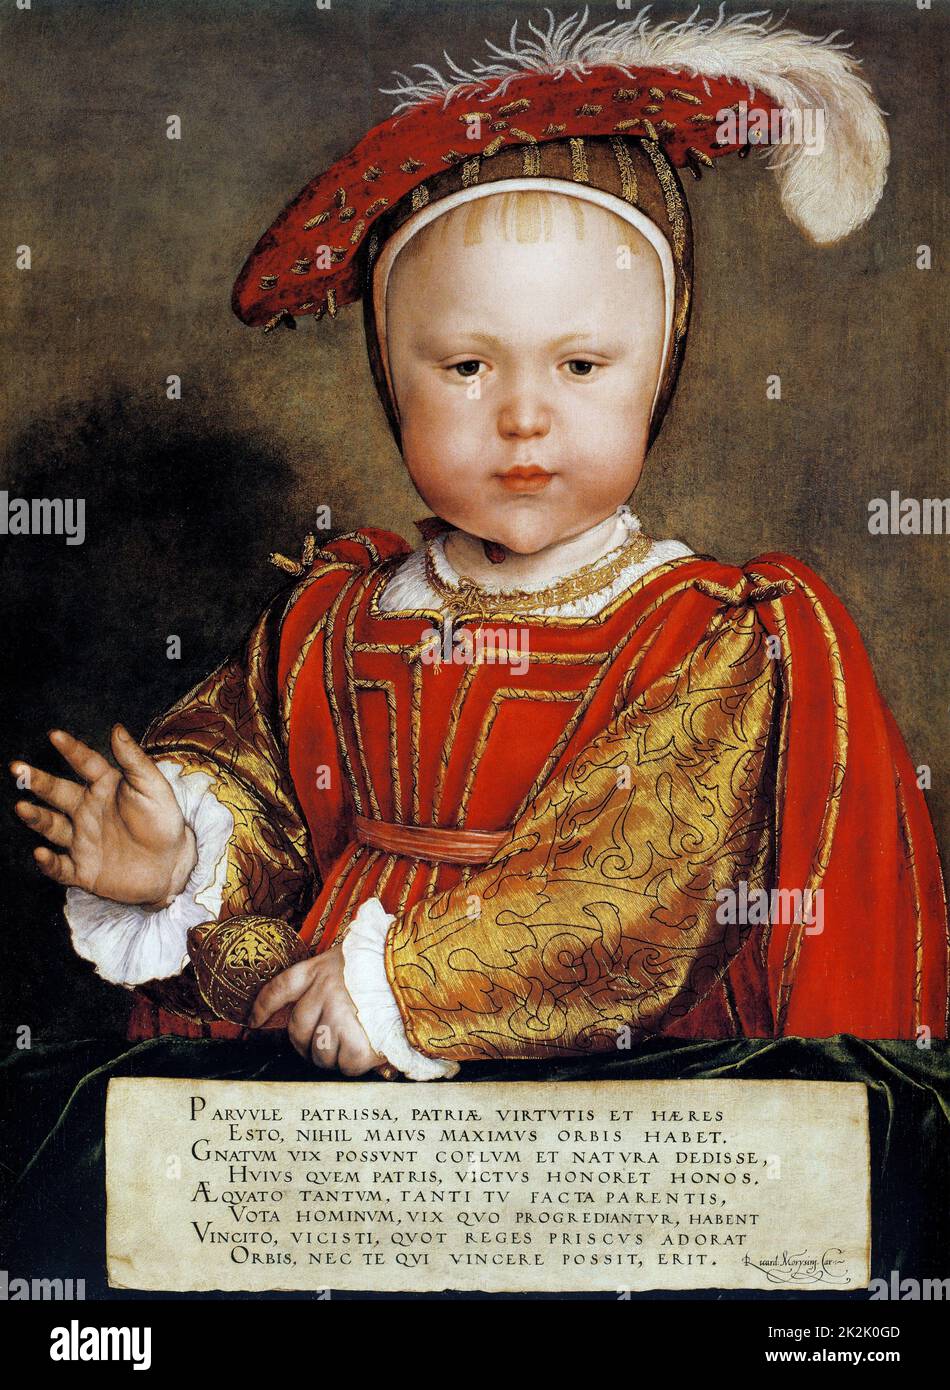 Hans Holbein die jüngere deutsche Schule Edward, Prinz von Wales (später Edward VI) König von England und Irland von 1547. Sohn von Henry VIII und seiner dritten Frau, Jane Seymour. Immer ein kränkliches Kind, starb er an natürlichen Ursachen. c.1538 Öl auf Holzplatte (57,7 x 43,1 cm) Denver, Kunstmuseum Stockfoto